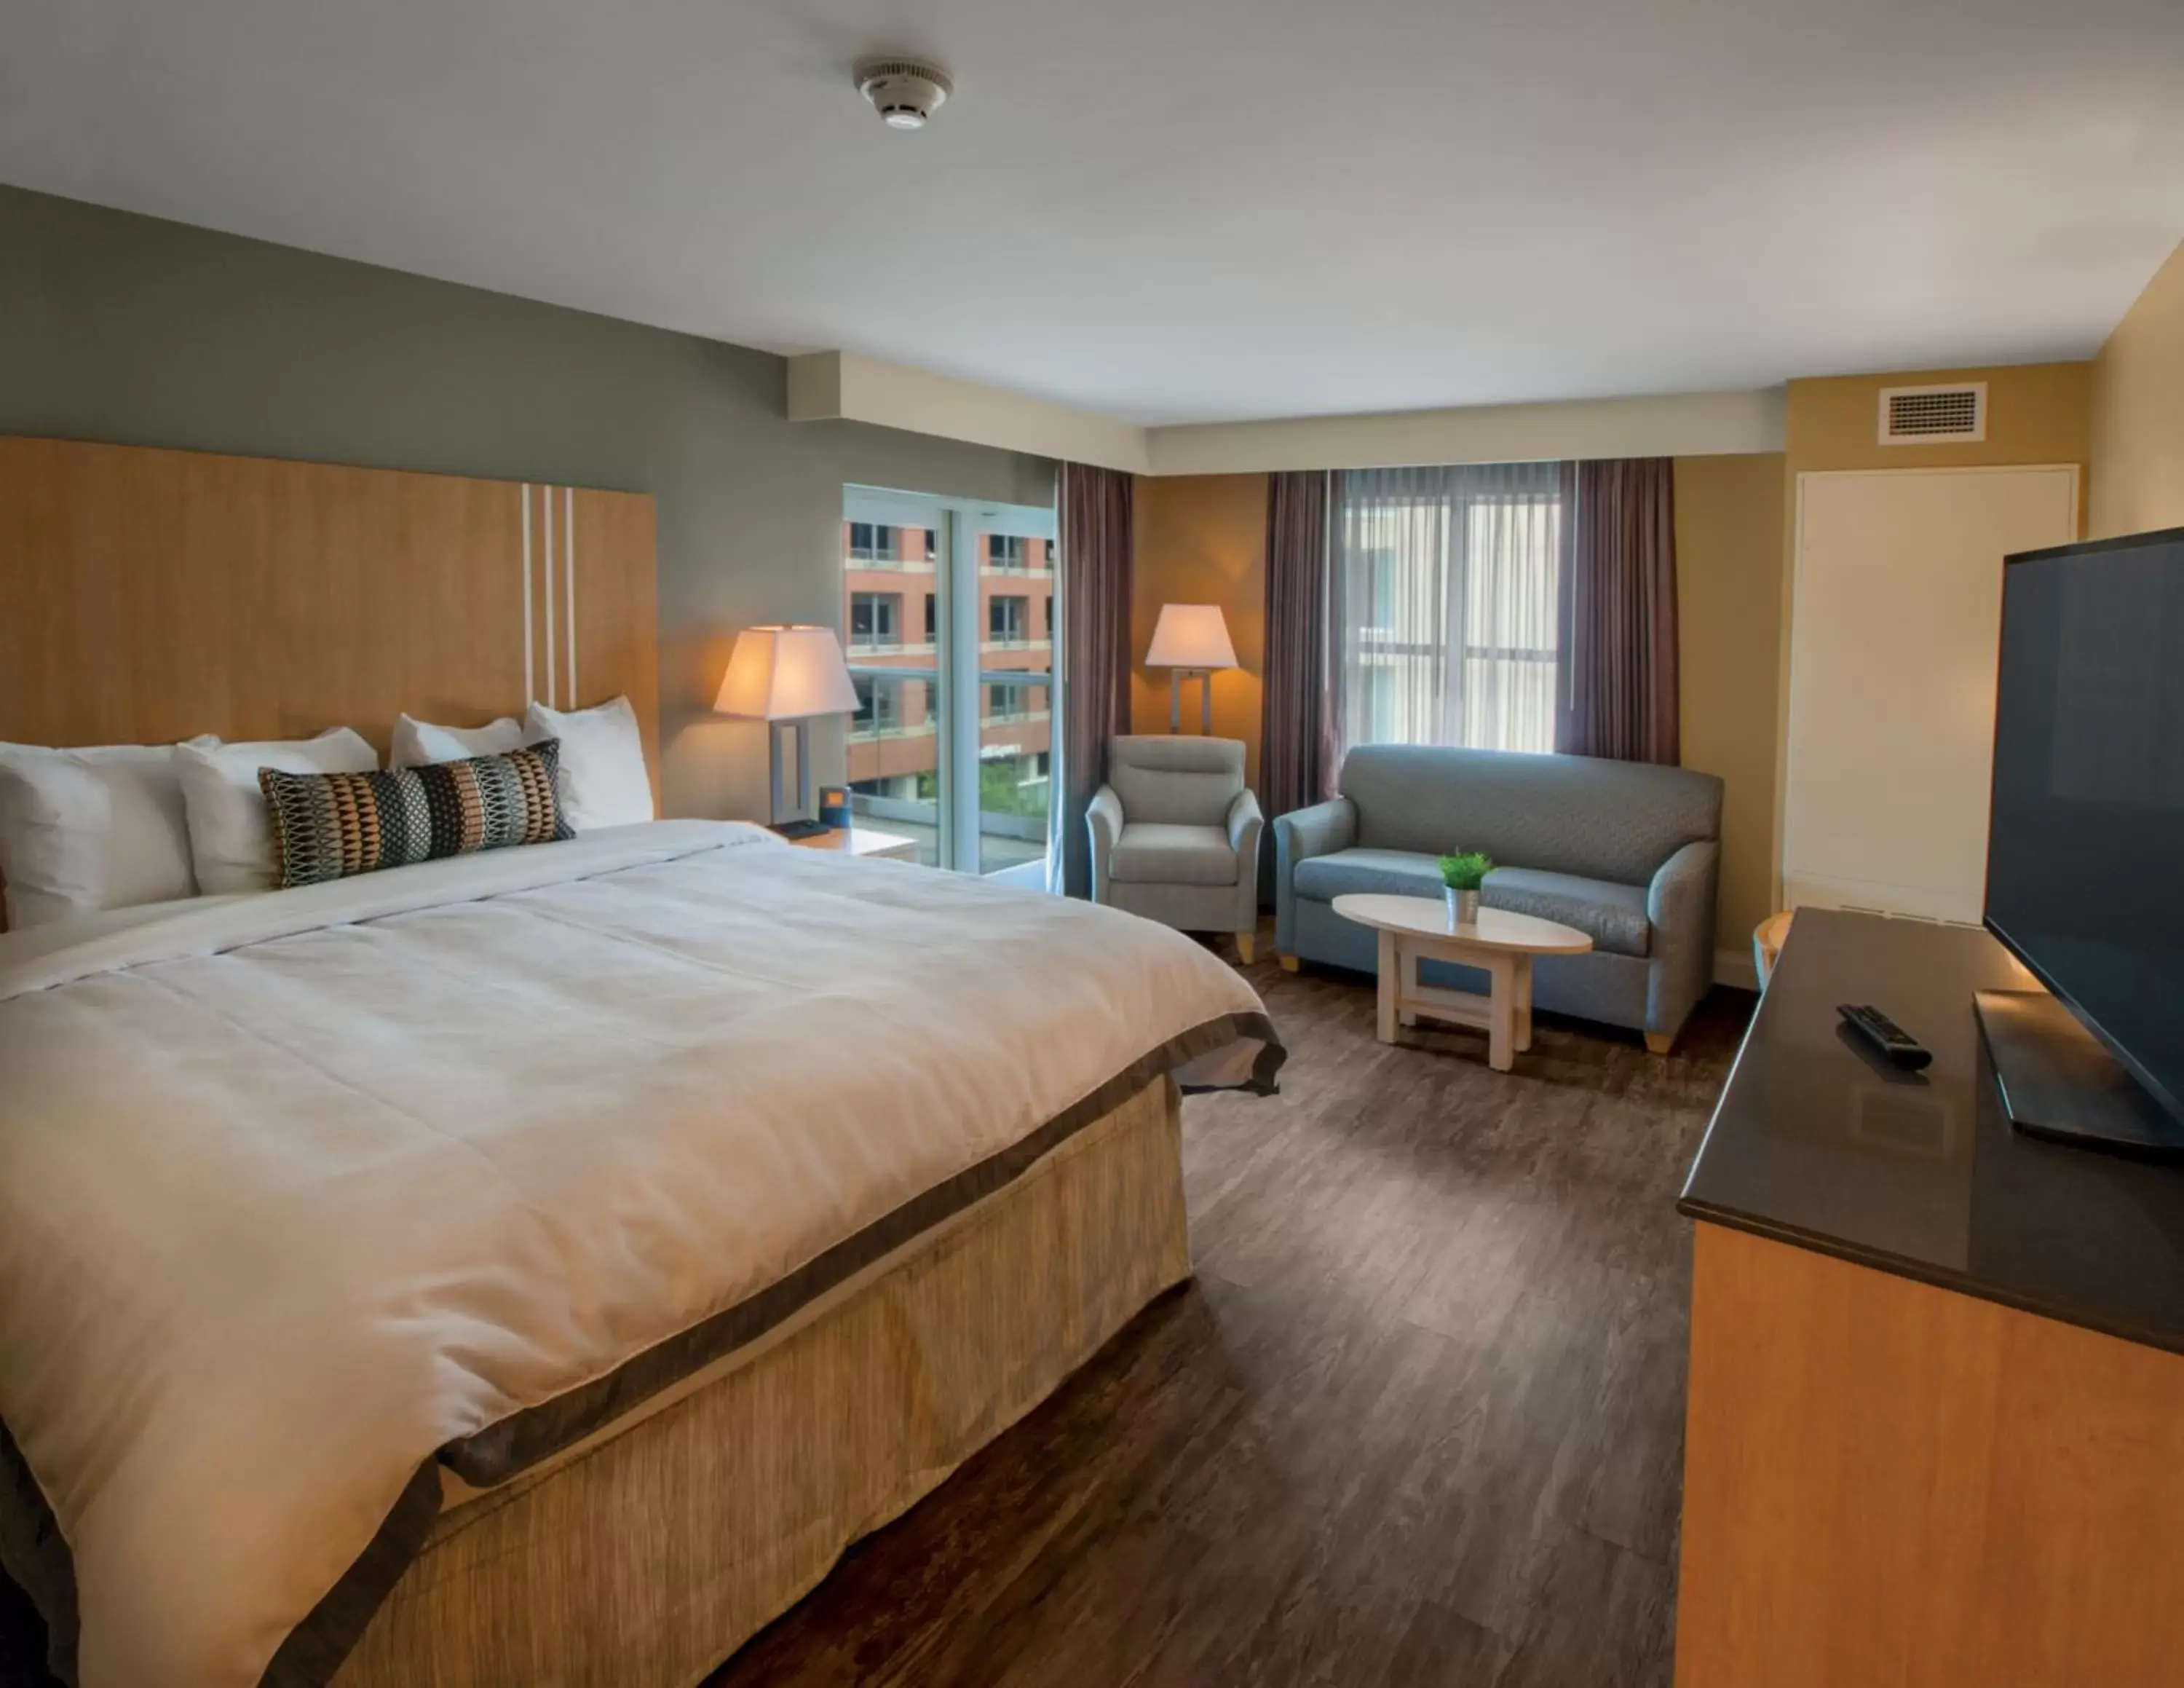 Bedroom in Hotel Ithaca